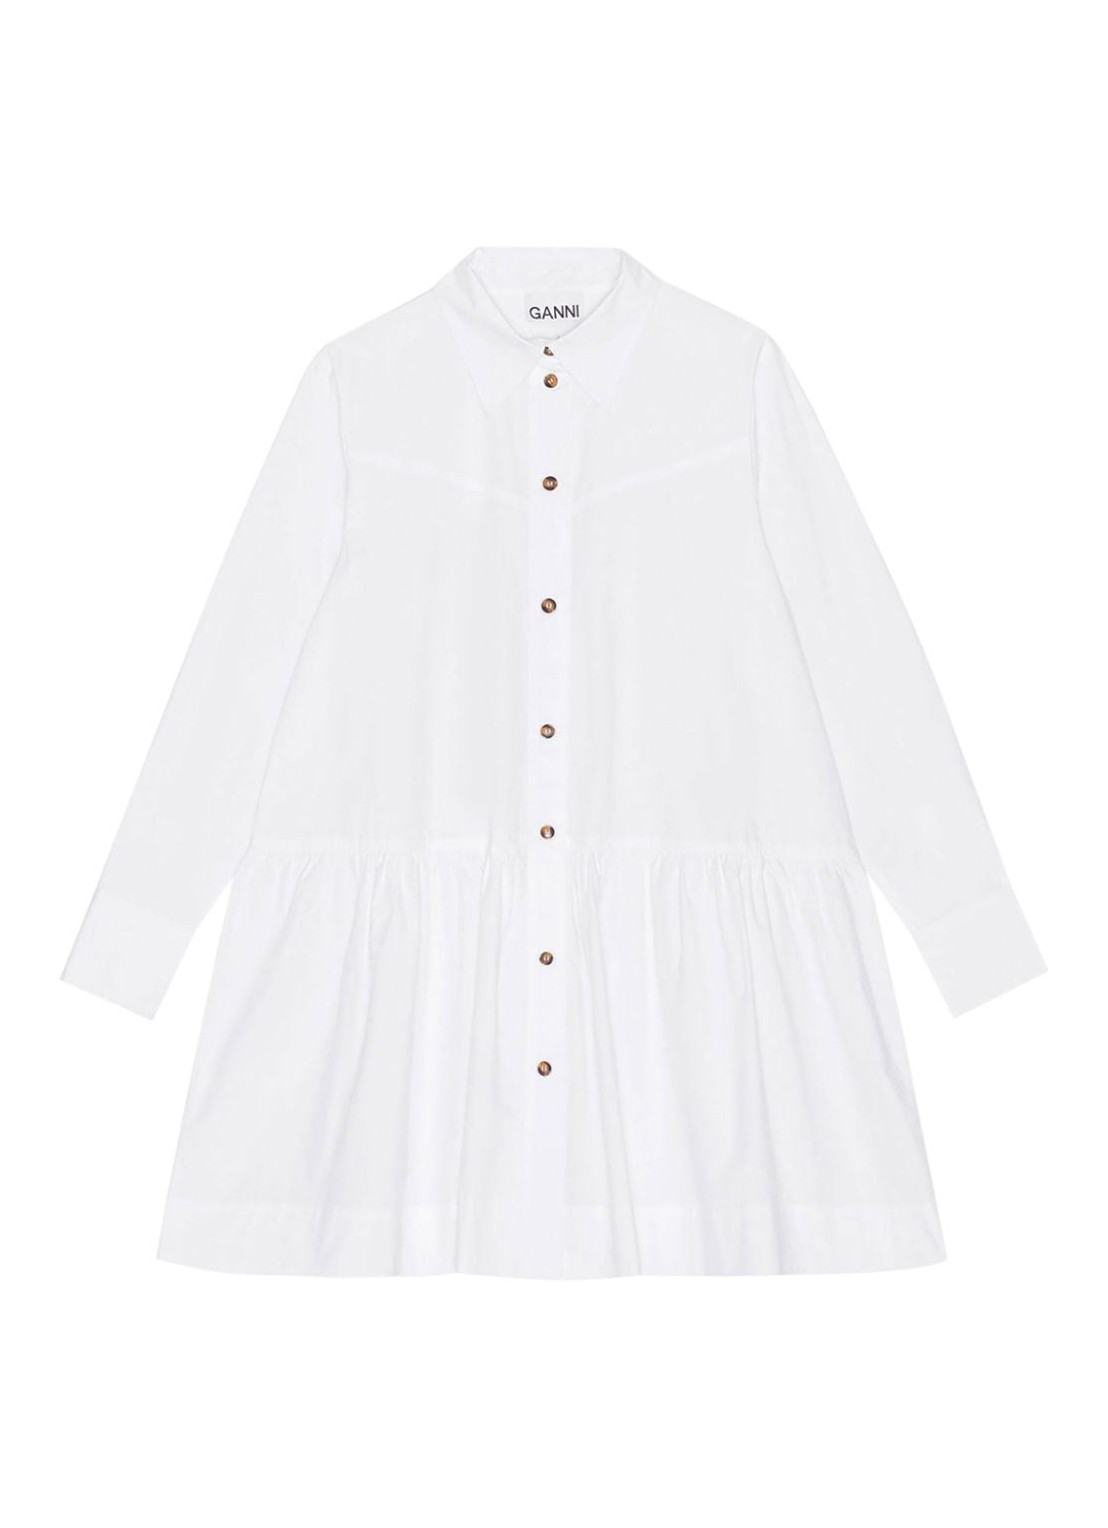 Vestido ganni dress woman cotton poplin mini shirt dress f8716 151 talla blanco
 